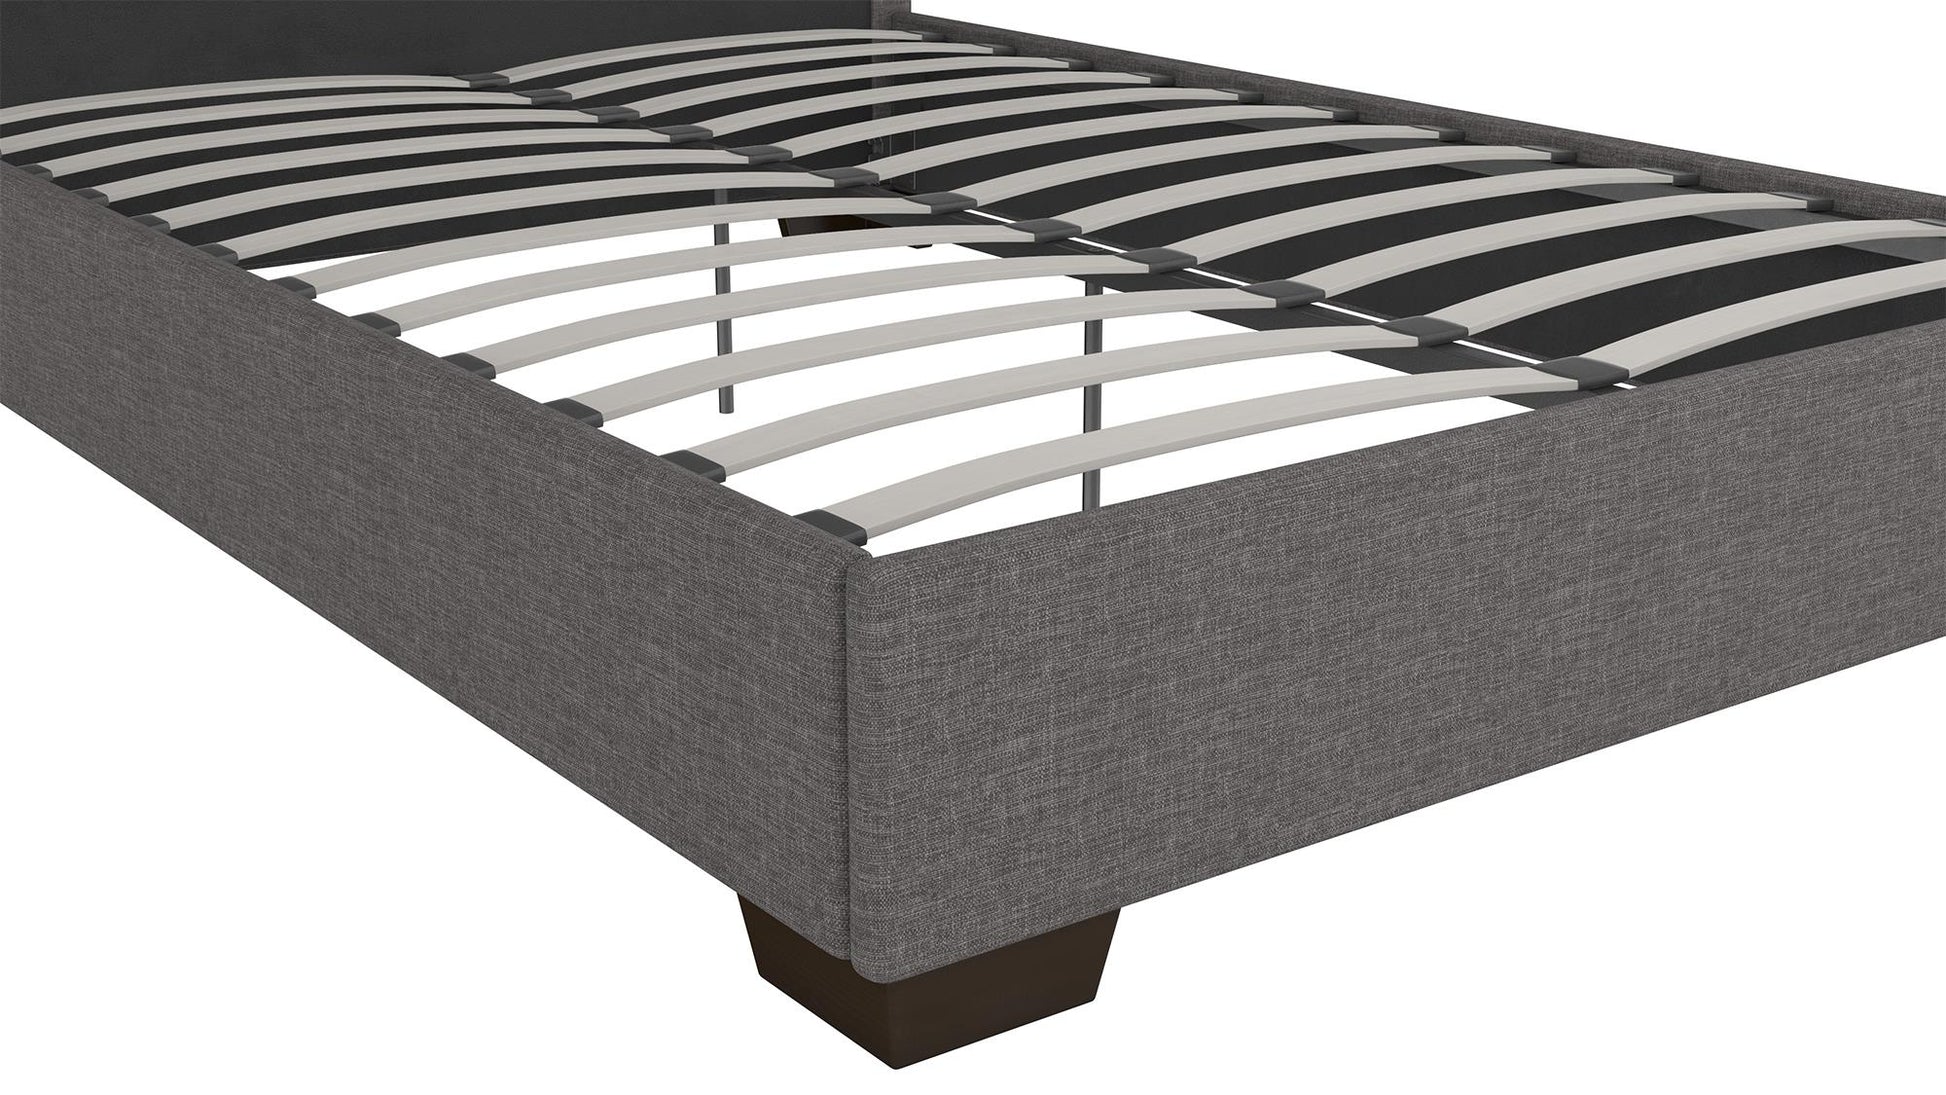 Gavin Upholstered Bed - Grey Linen - Full